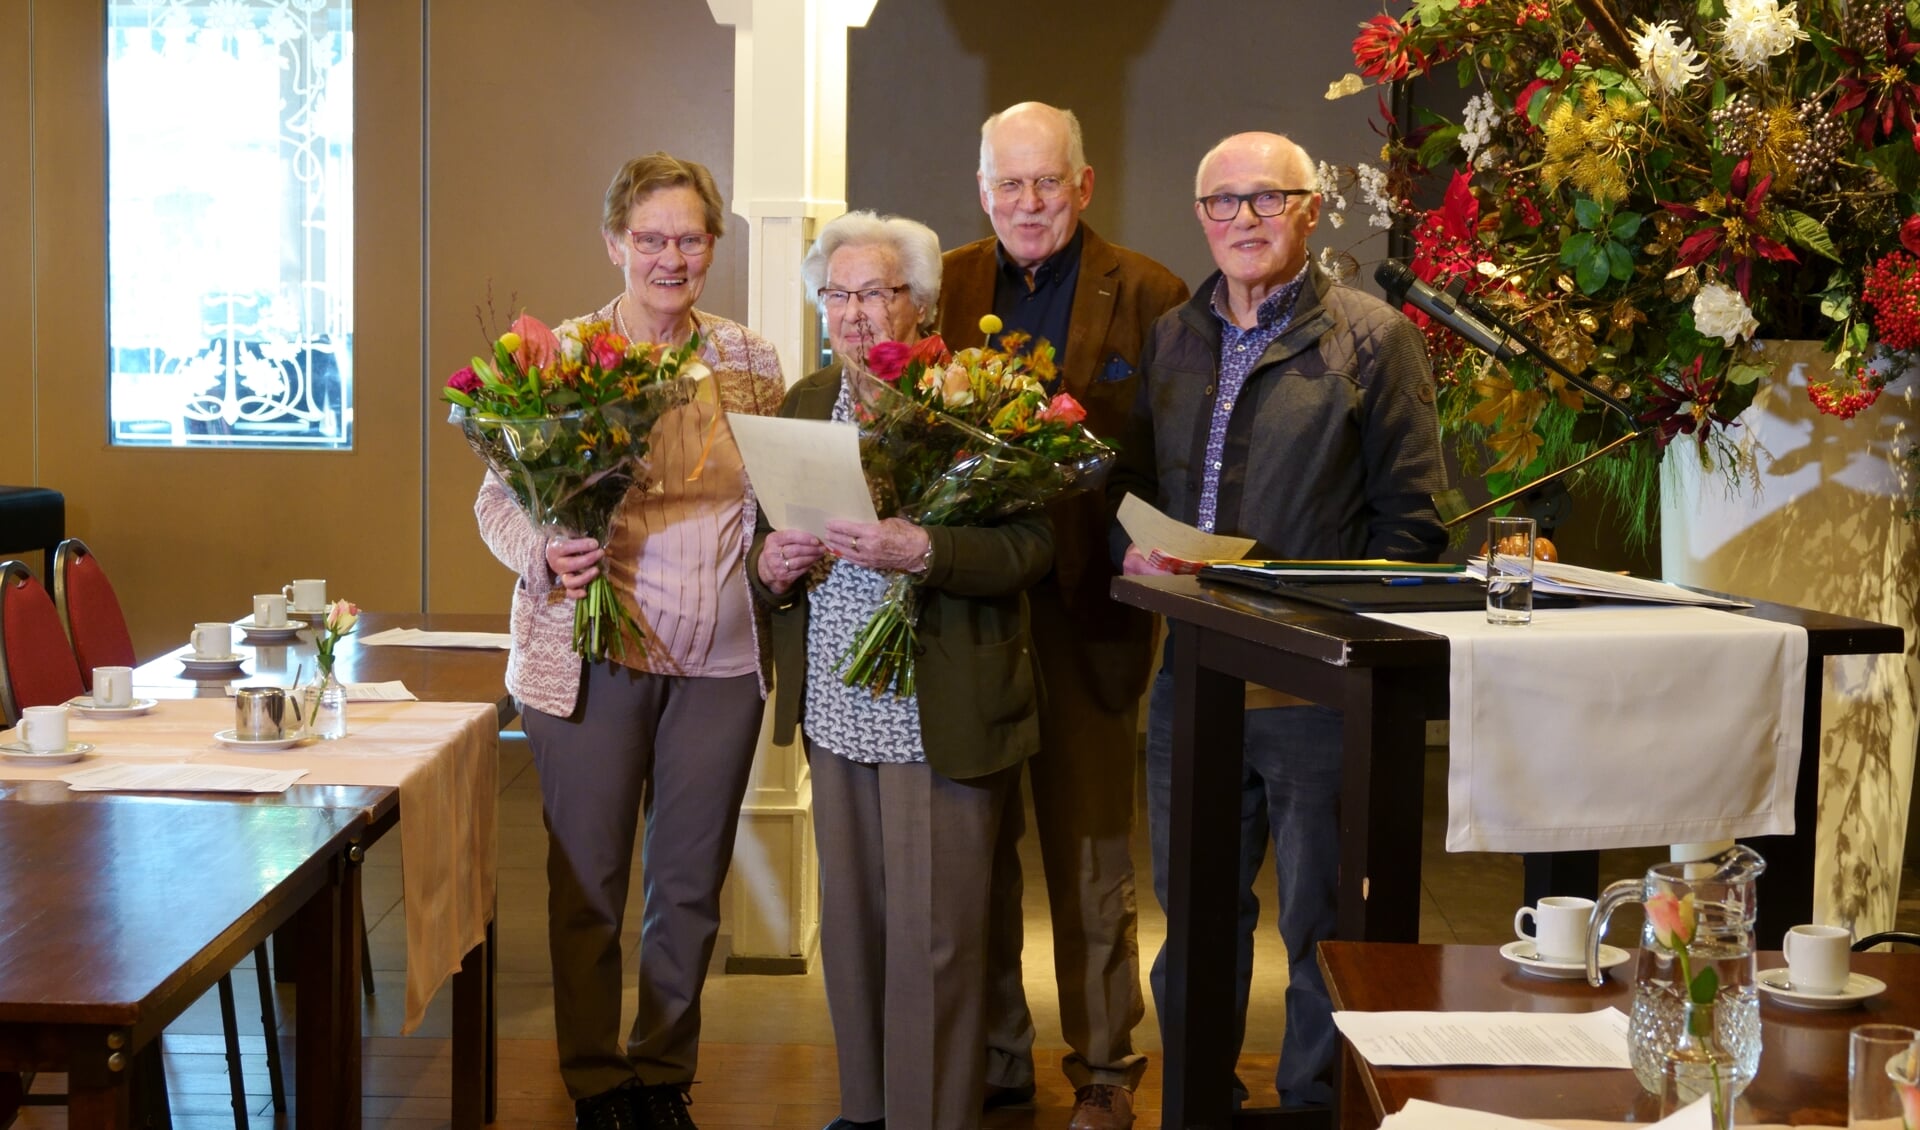 De ereleden werden in het zonnetje gezet. Van links naar rechts Annie Sonderen, Nel van 't Zand, Gerard Siebelink en Hemmie Sonderen. Foto: Bernard Rave